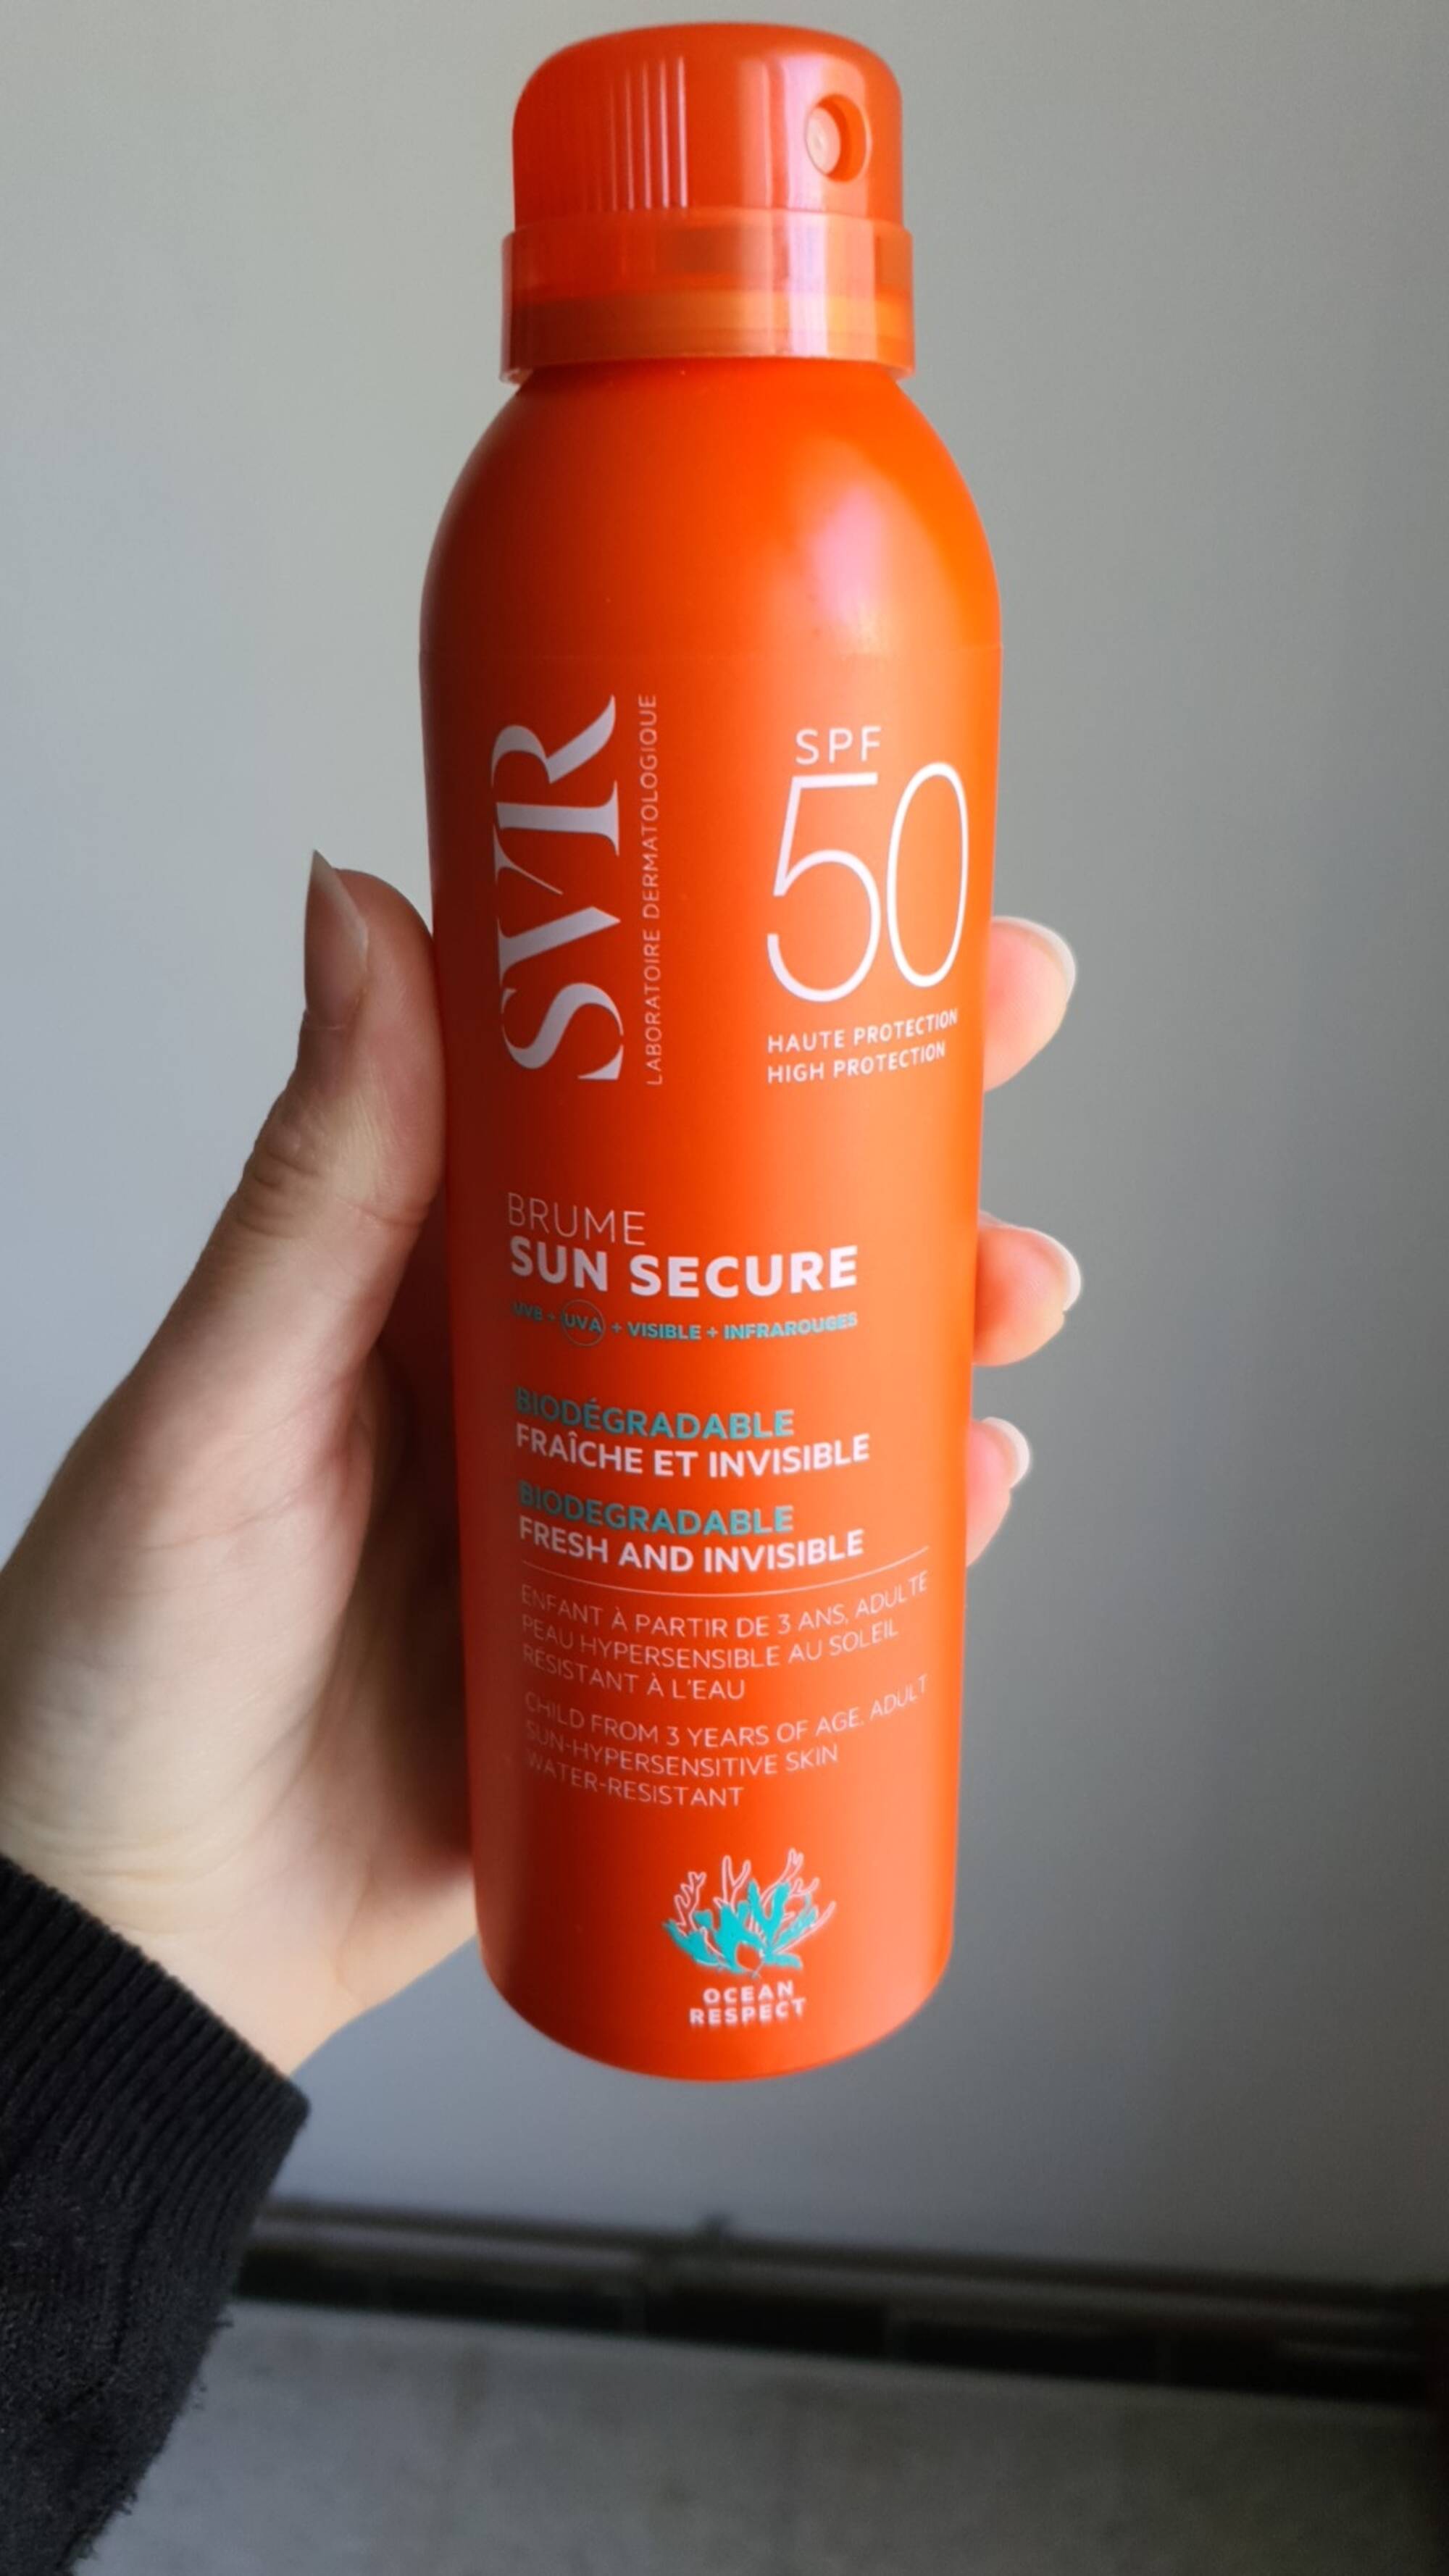 SVR LABORATOIRE DERMATOLOGIQUE - Brume Sun secure - SPF 50 Haute protection 